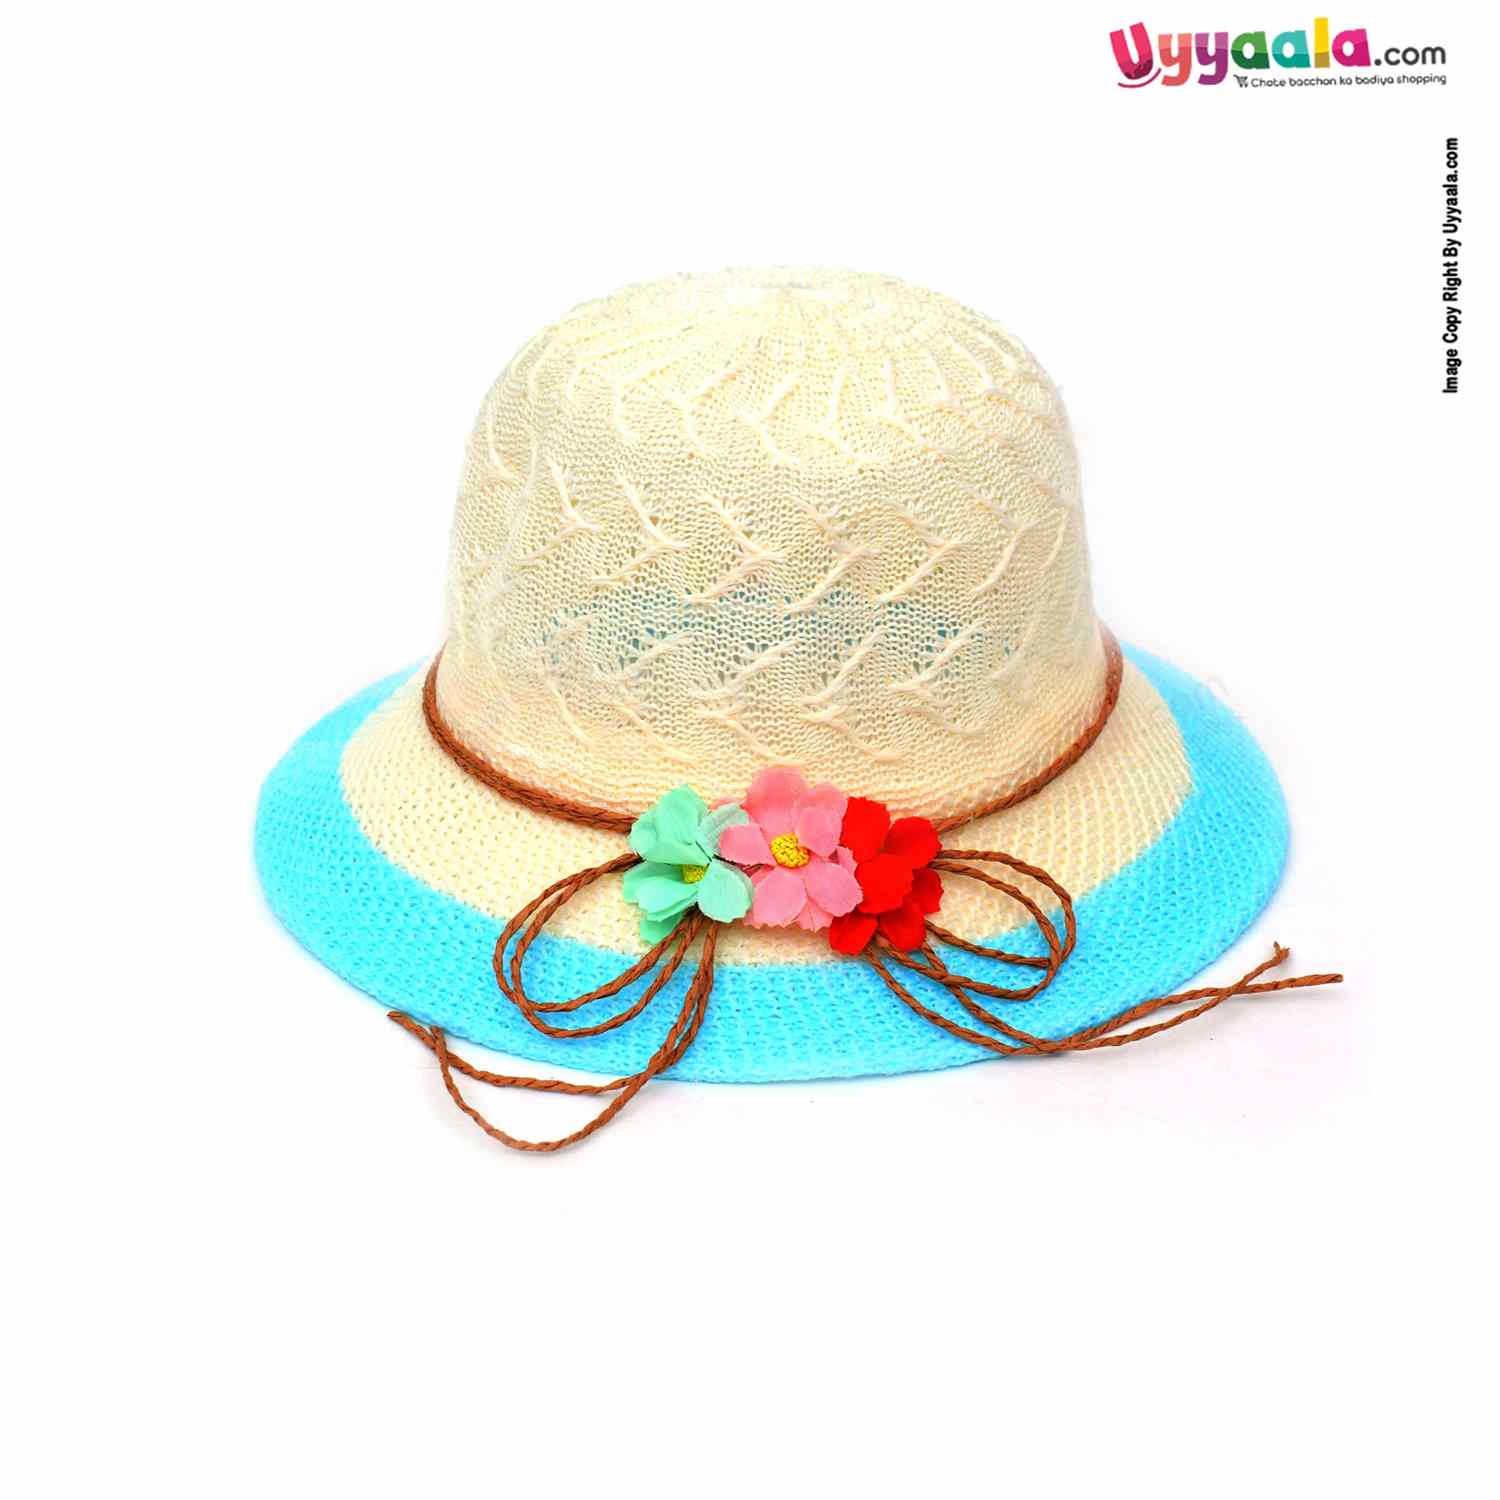 Fashion Round Net Hat for Kids 2+Y Age, Cream, Blue